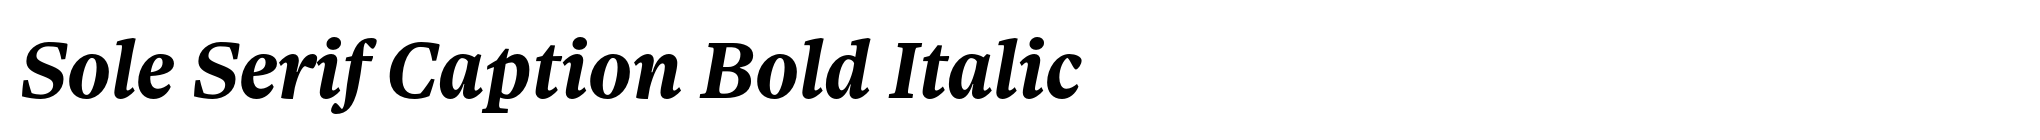 Sole Serif Caption Bold Italic image